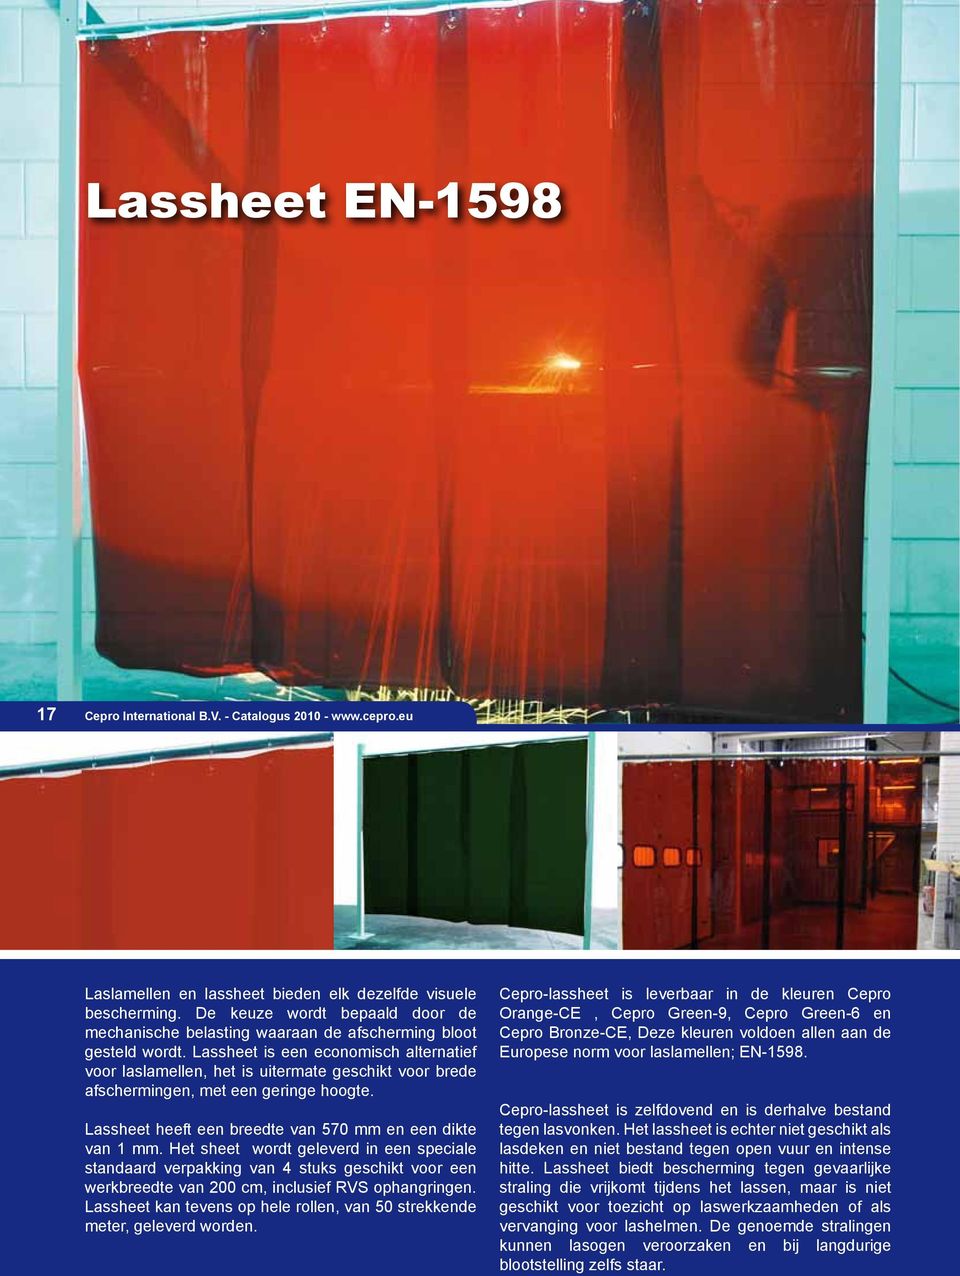 Lassheet is een economisch alternatief voor laslamellen, het is uitermate geschikt voor brede afschermingen, met een geringe hoogte. Lassheet heeft een breedte van 570 mm en een dikte van 1 mm.